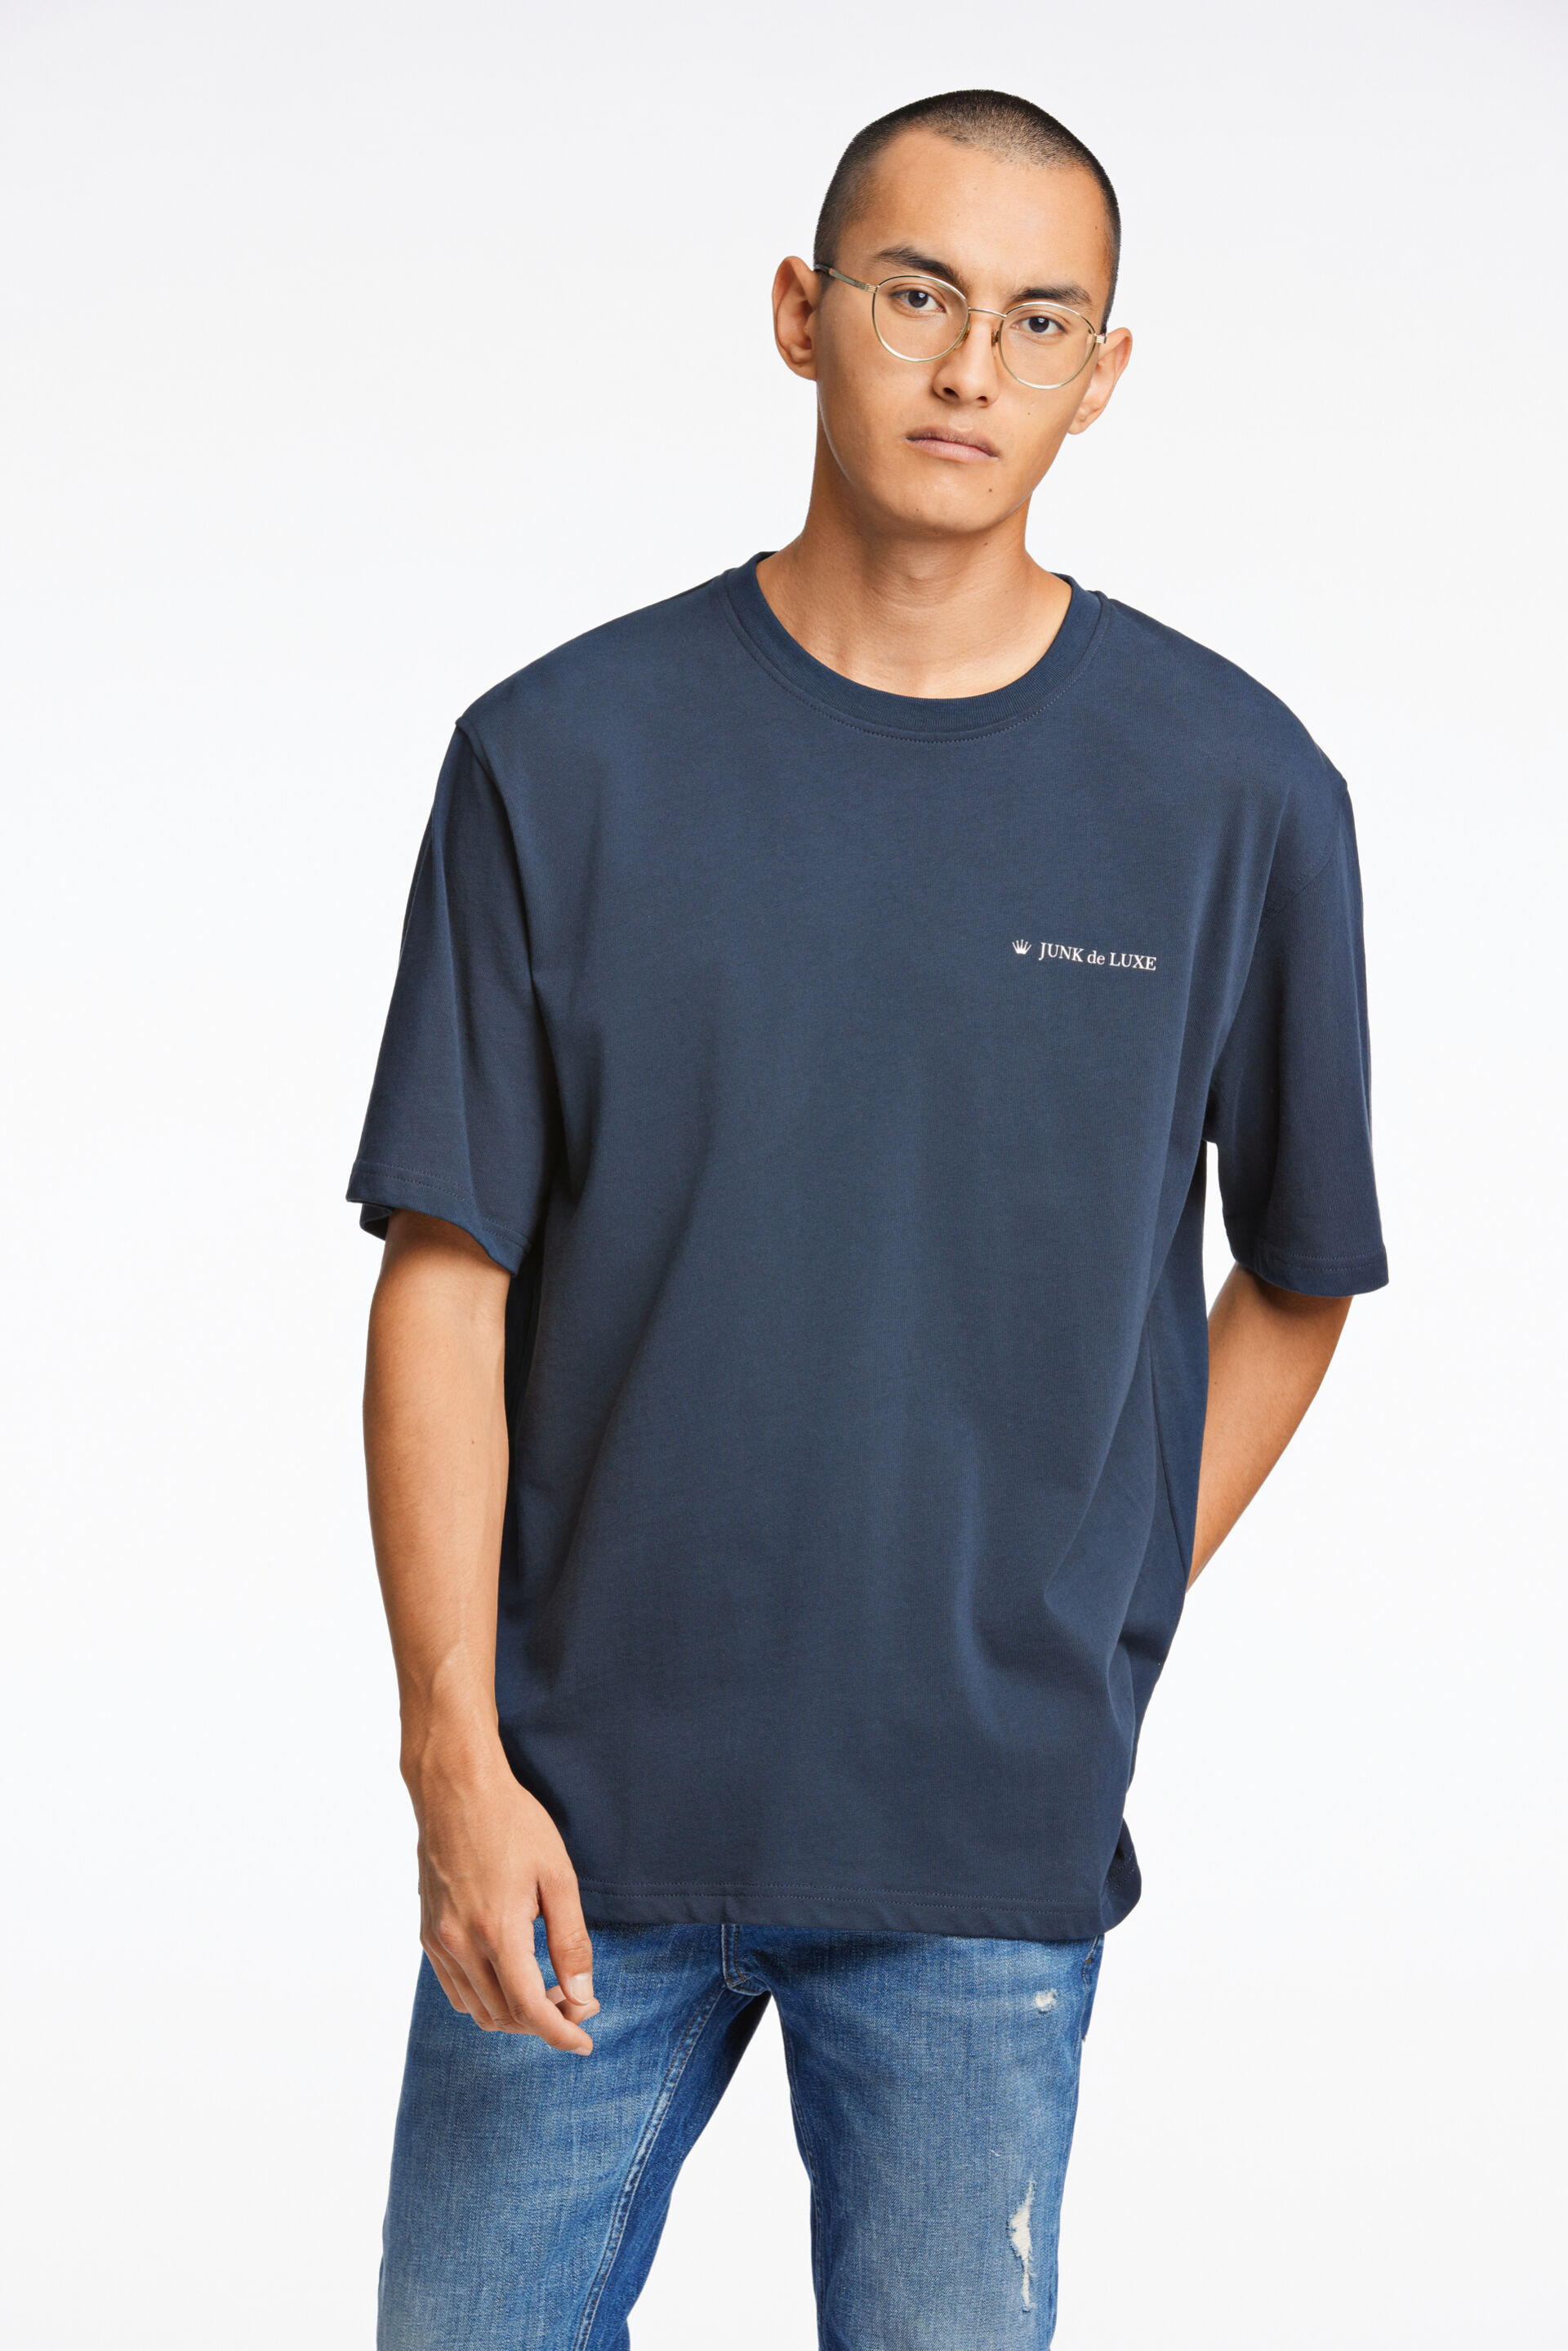 Junk de Luxe  T-shirt Blå 60-455019